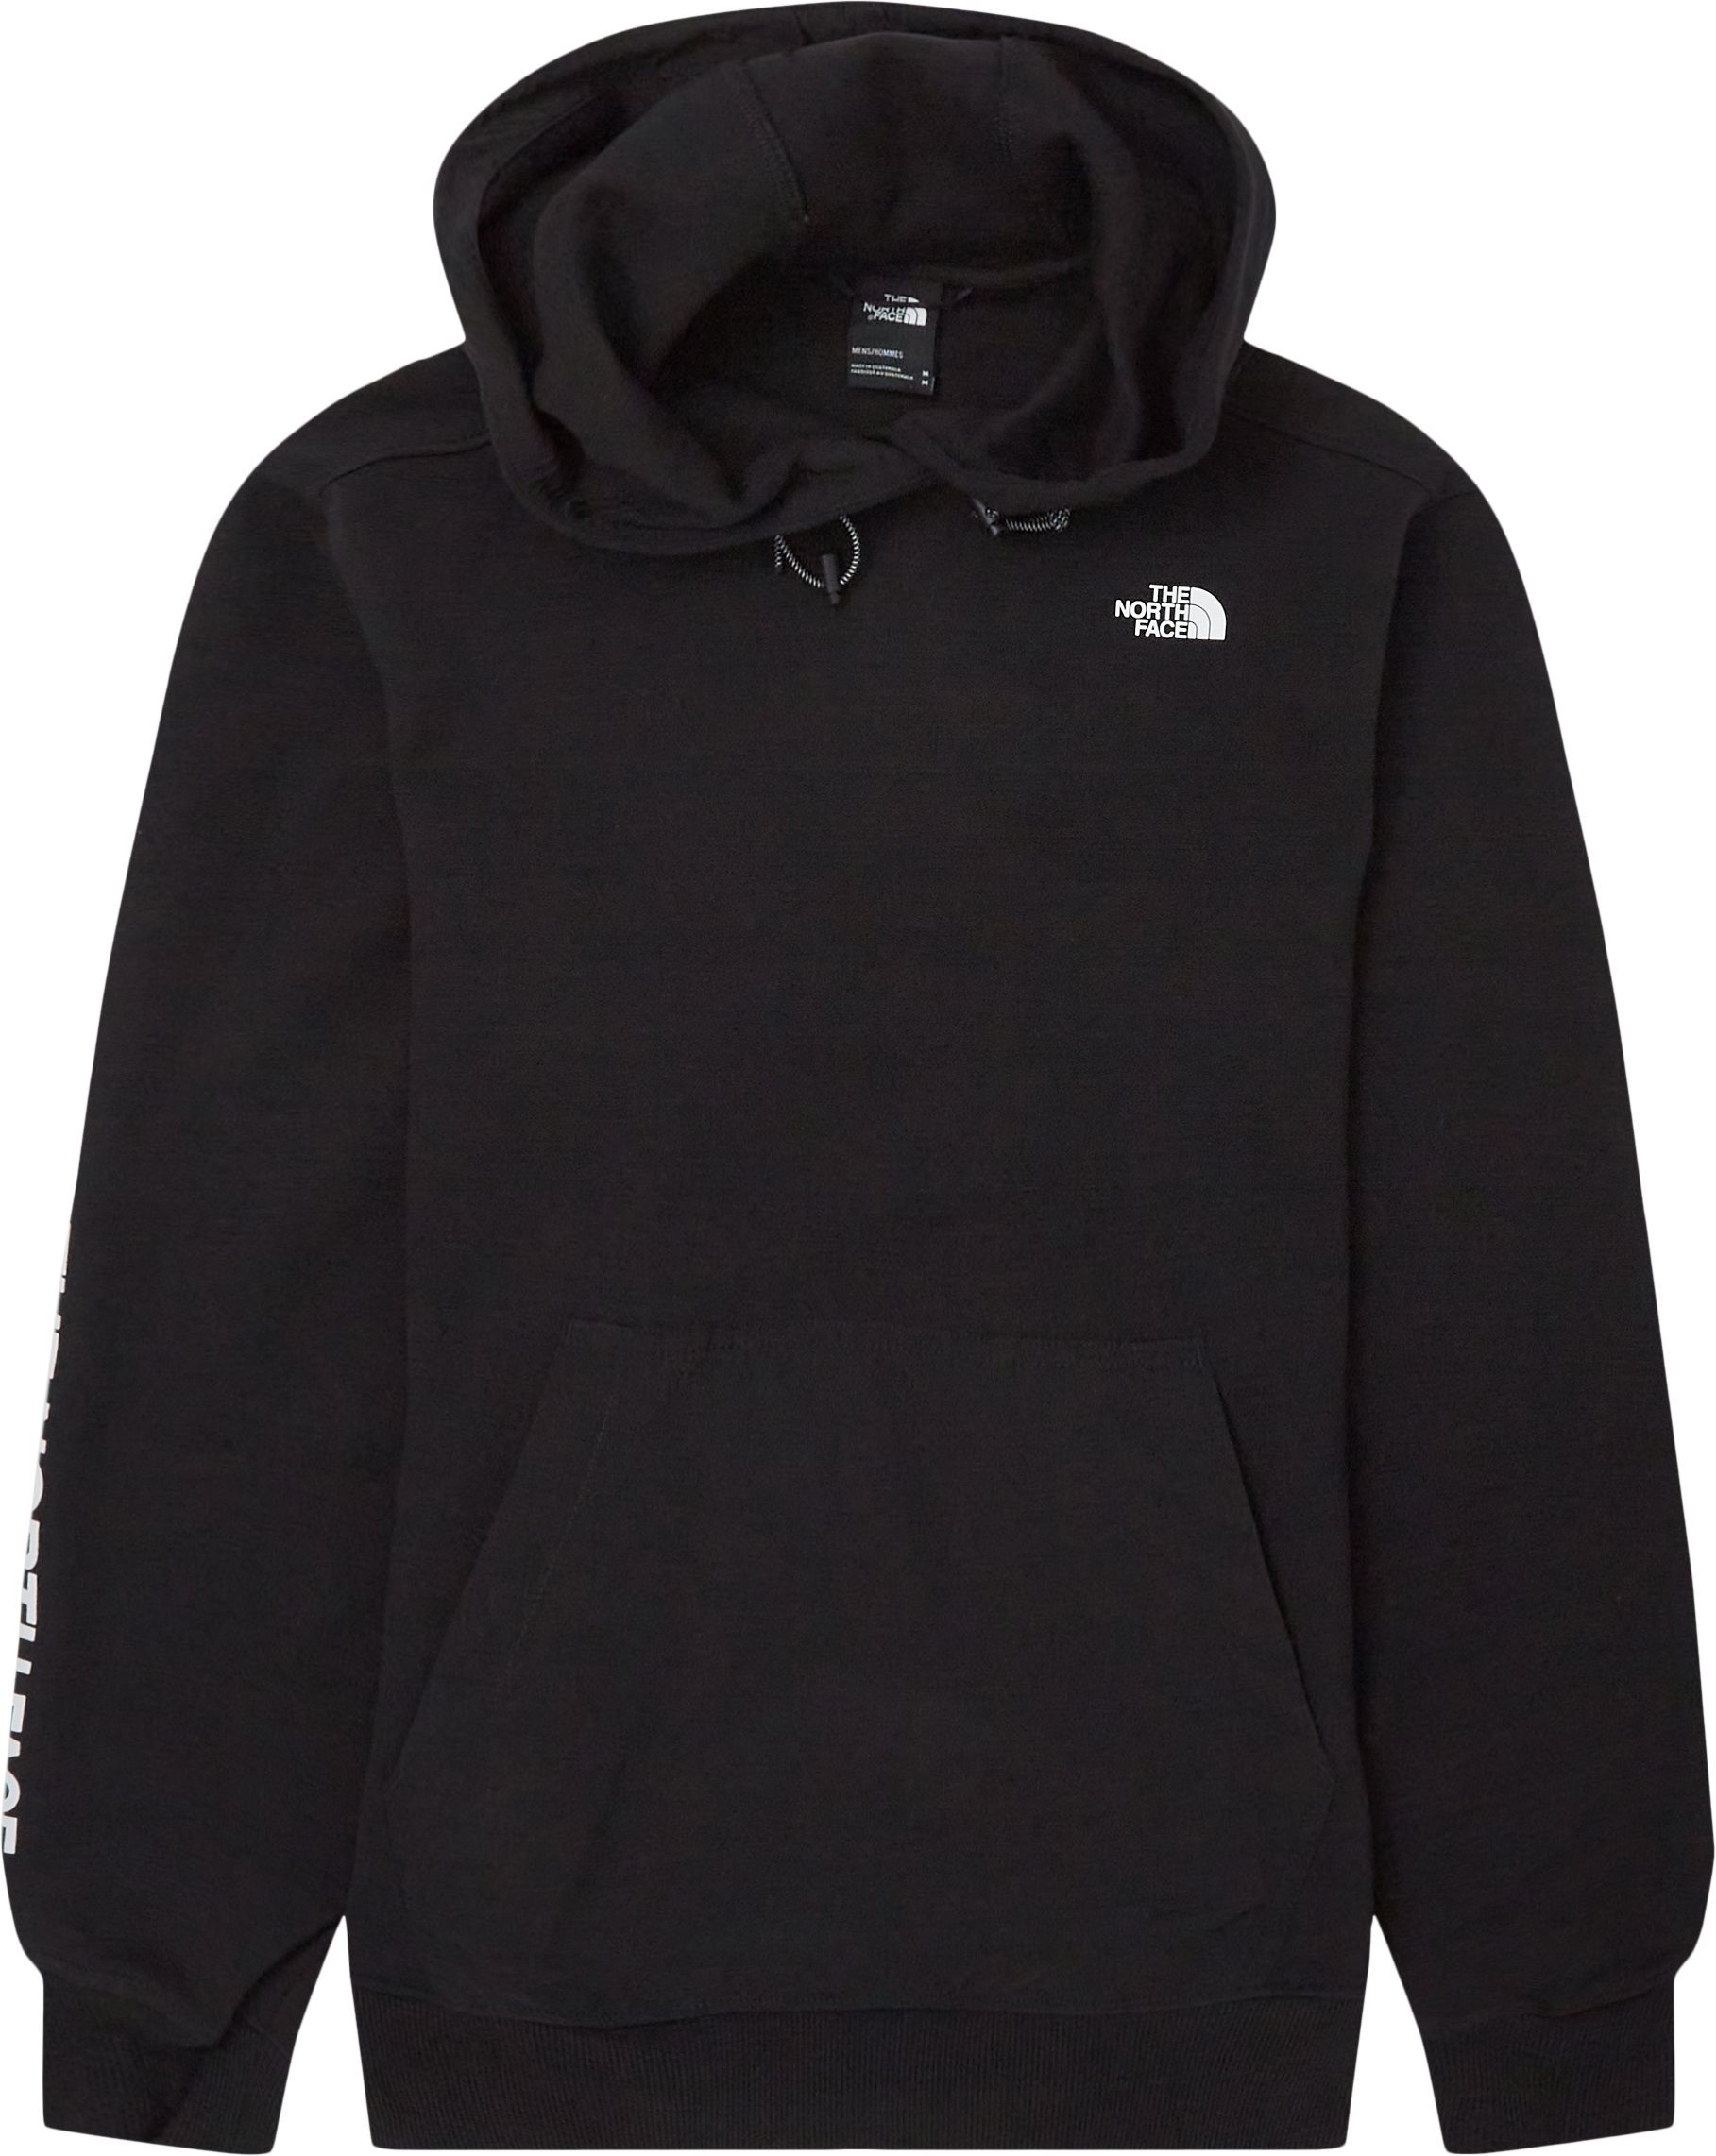 Tech Hoodie - Sweatshirts - Regular fit - Black